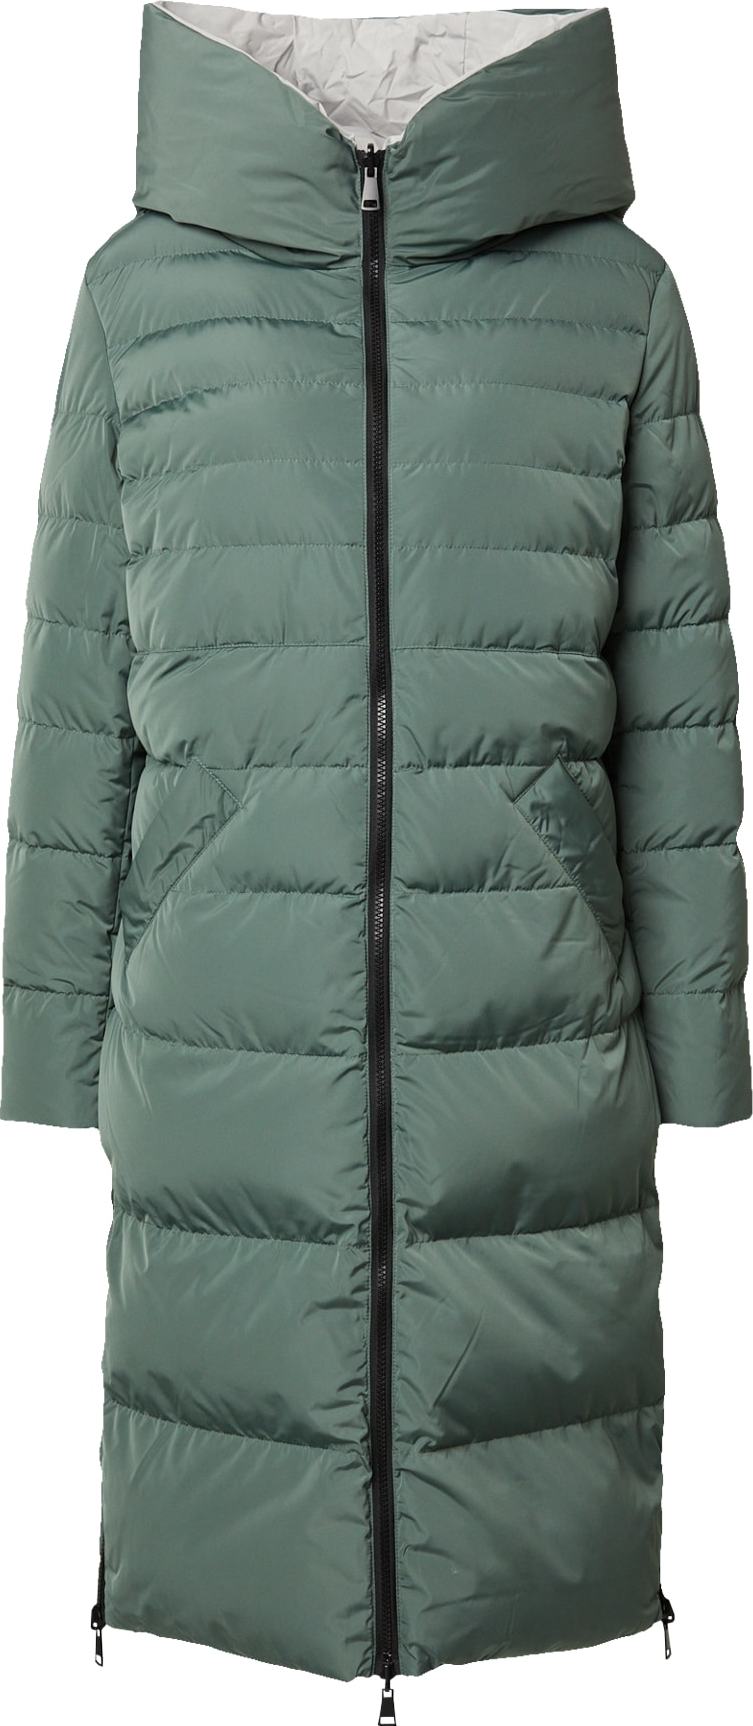 Zimní kabát RINO & PELLE tmavě zelená / bílá